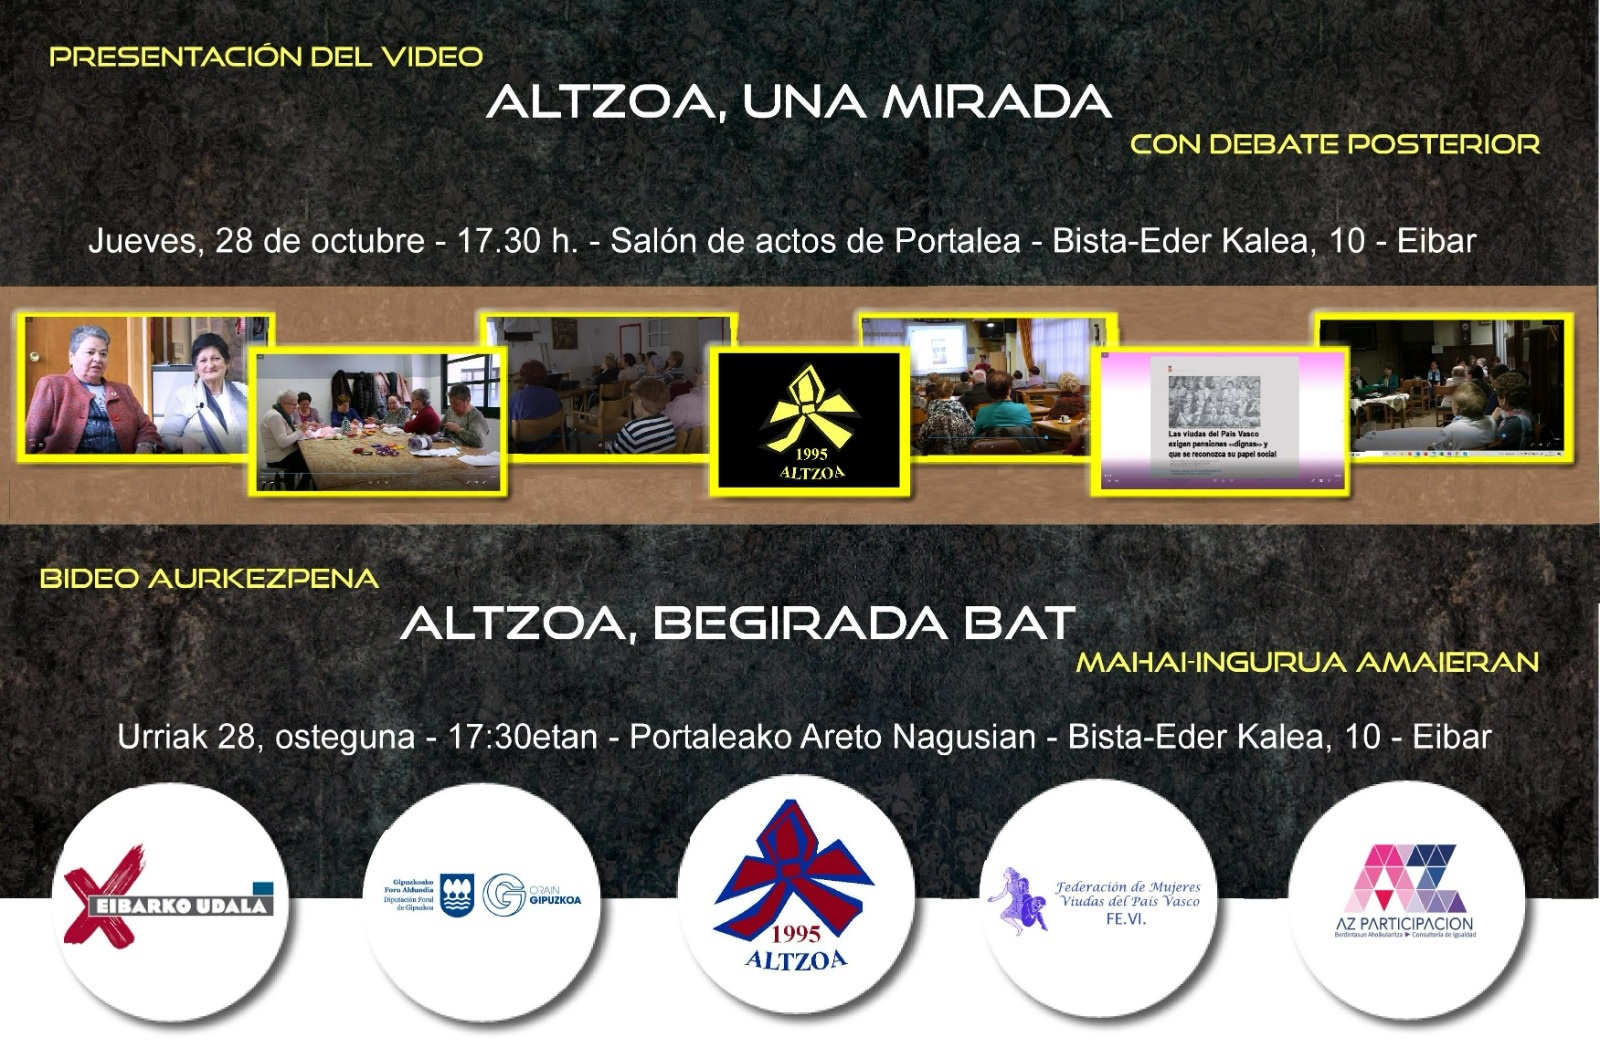 Altzoa elkarteak "Altzoa: begirada bat" dokumentala aurkeztuko du